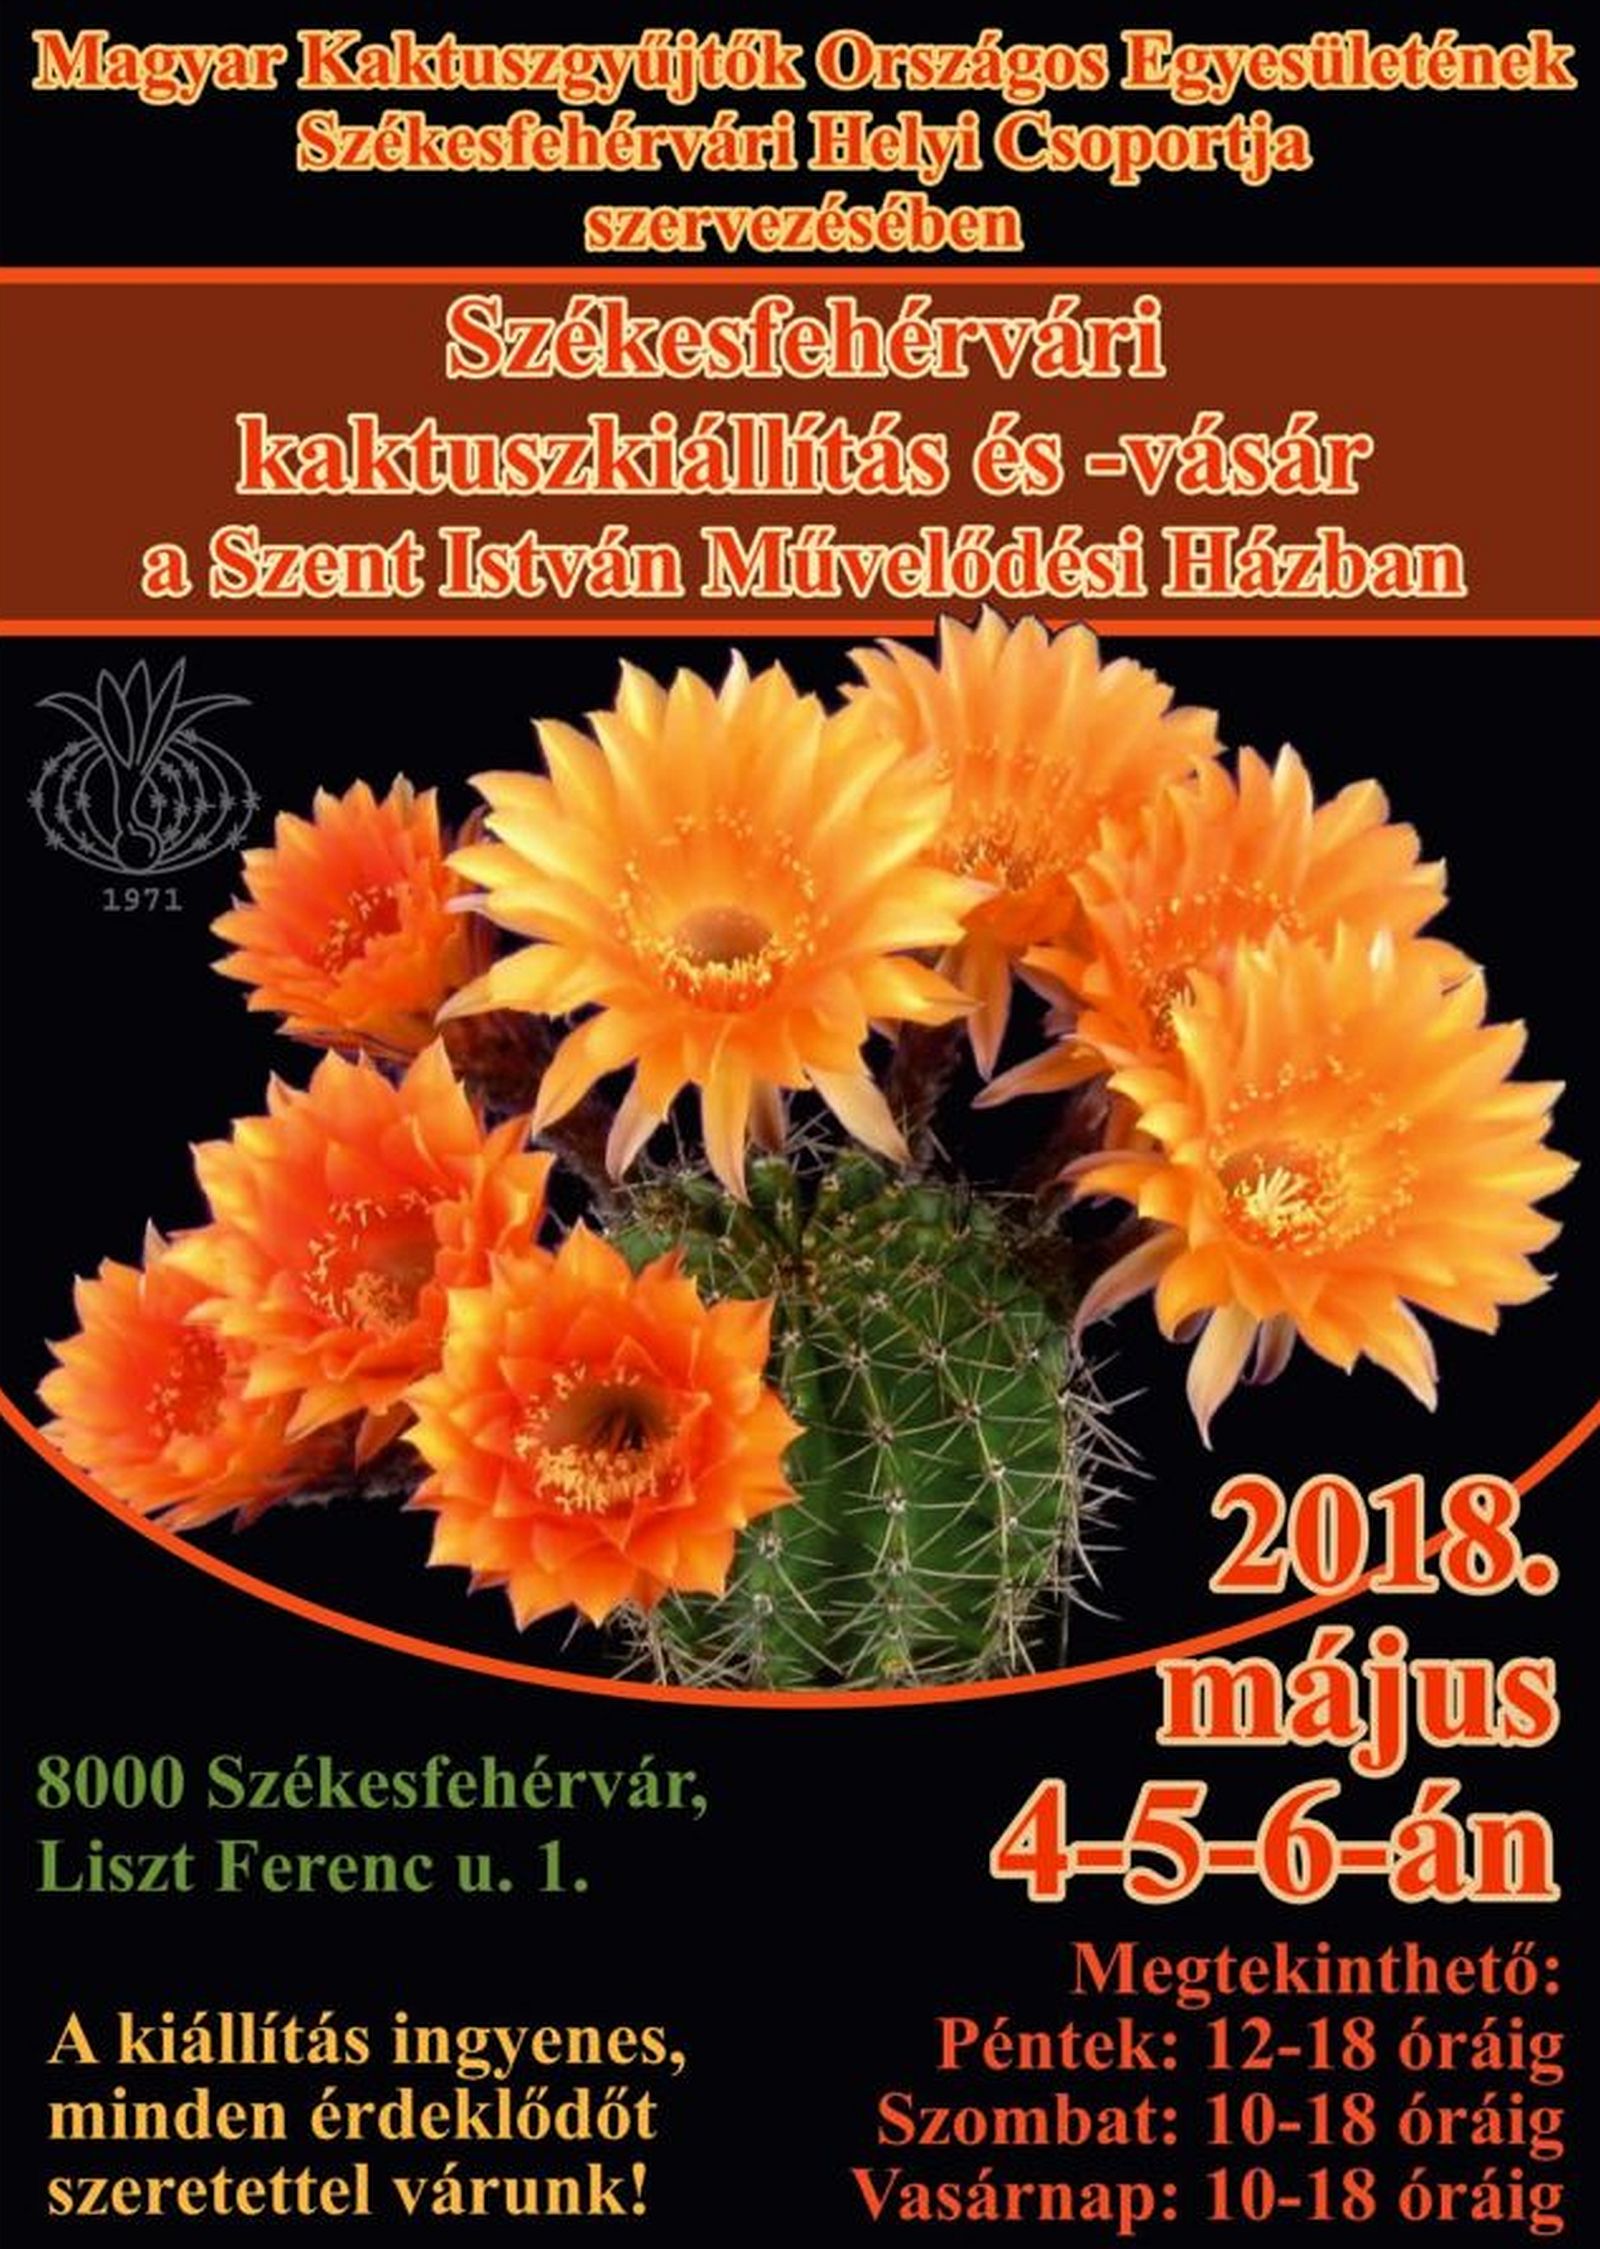 Kaktusz-kiállítás és vásár lesz hétvégén Székesfehérváron